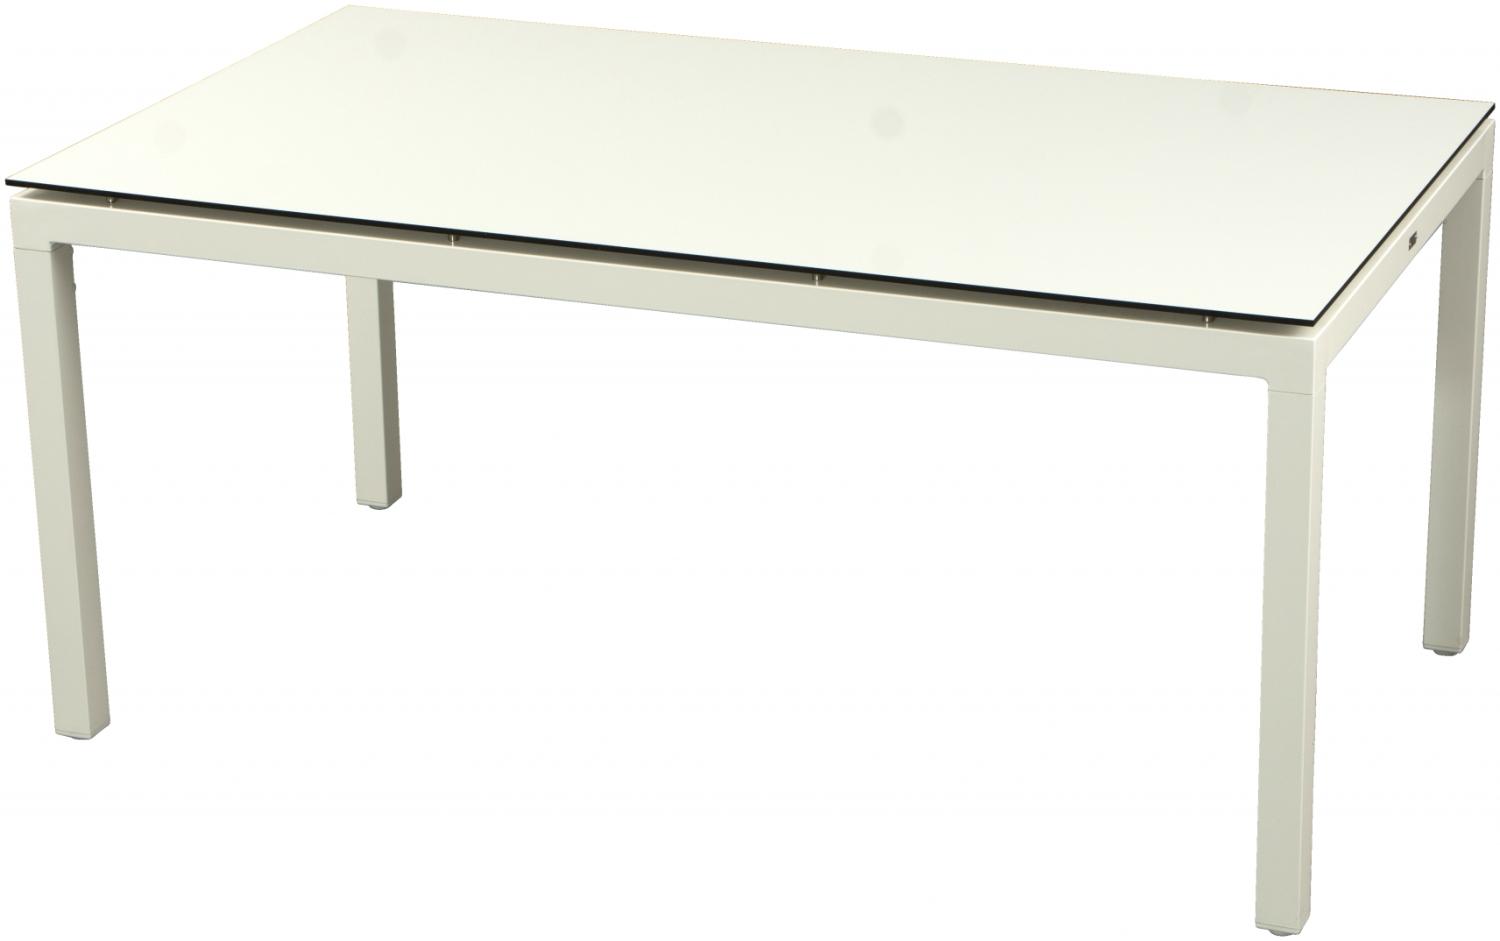 Inko Gartentisch Aluminium weiß 160x90 cm Terrassentisch Tischplatte nach Wahl Deropal weiß Bild 1